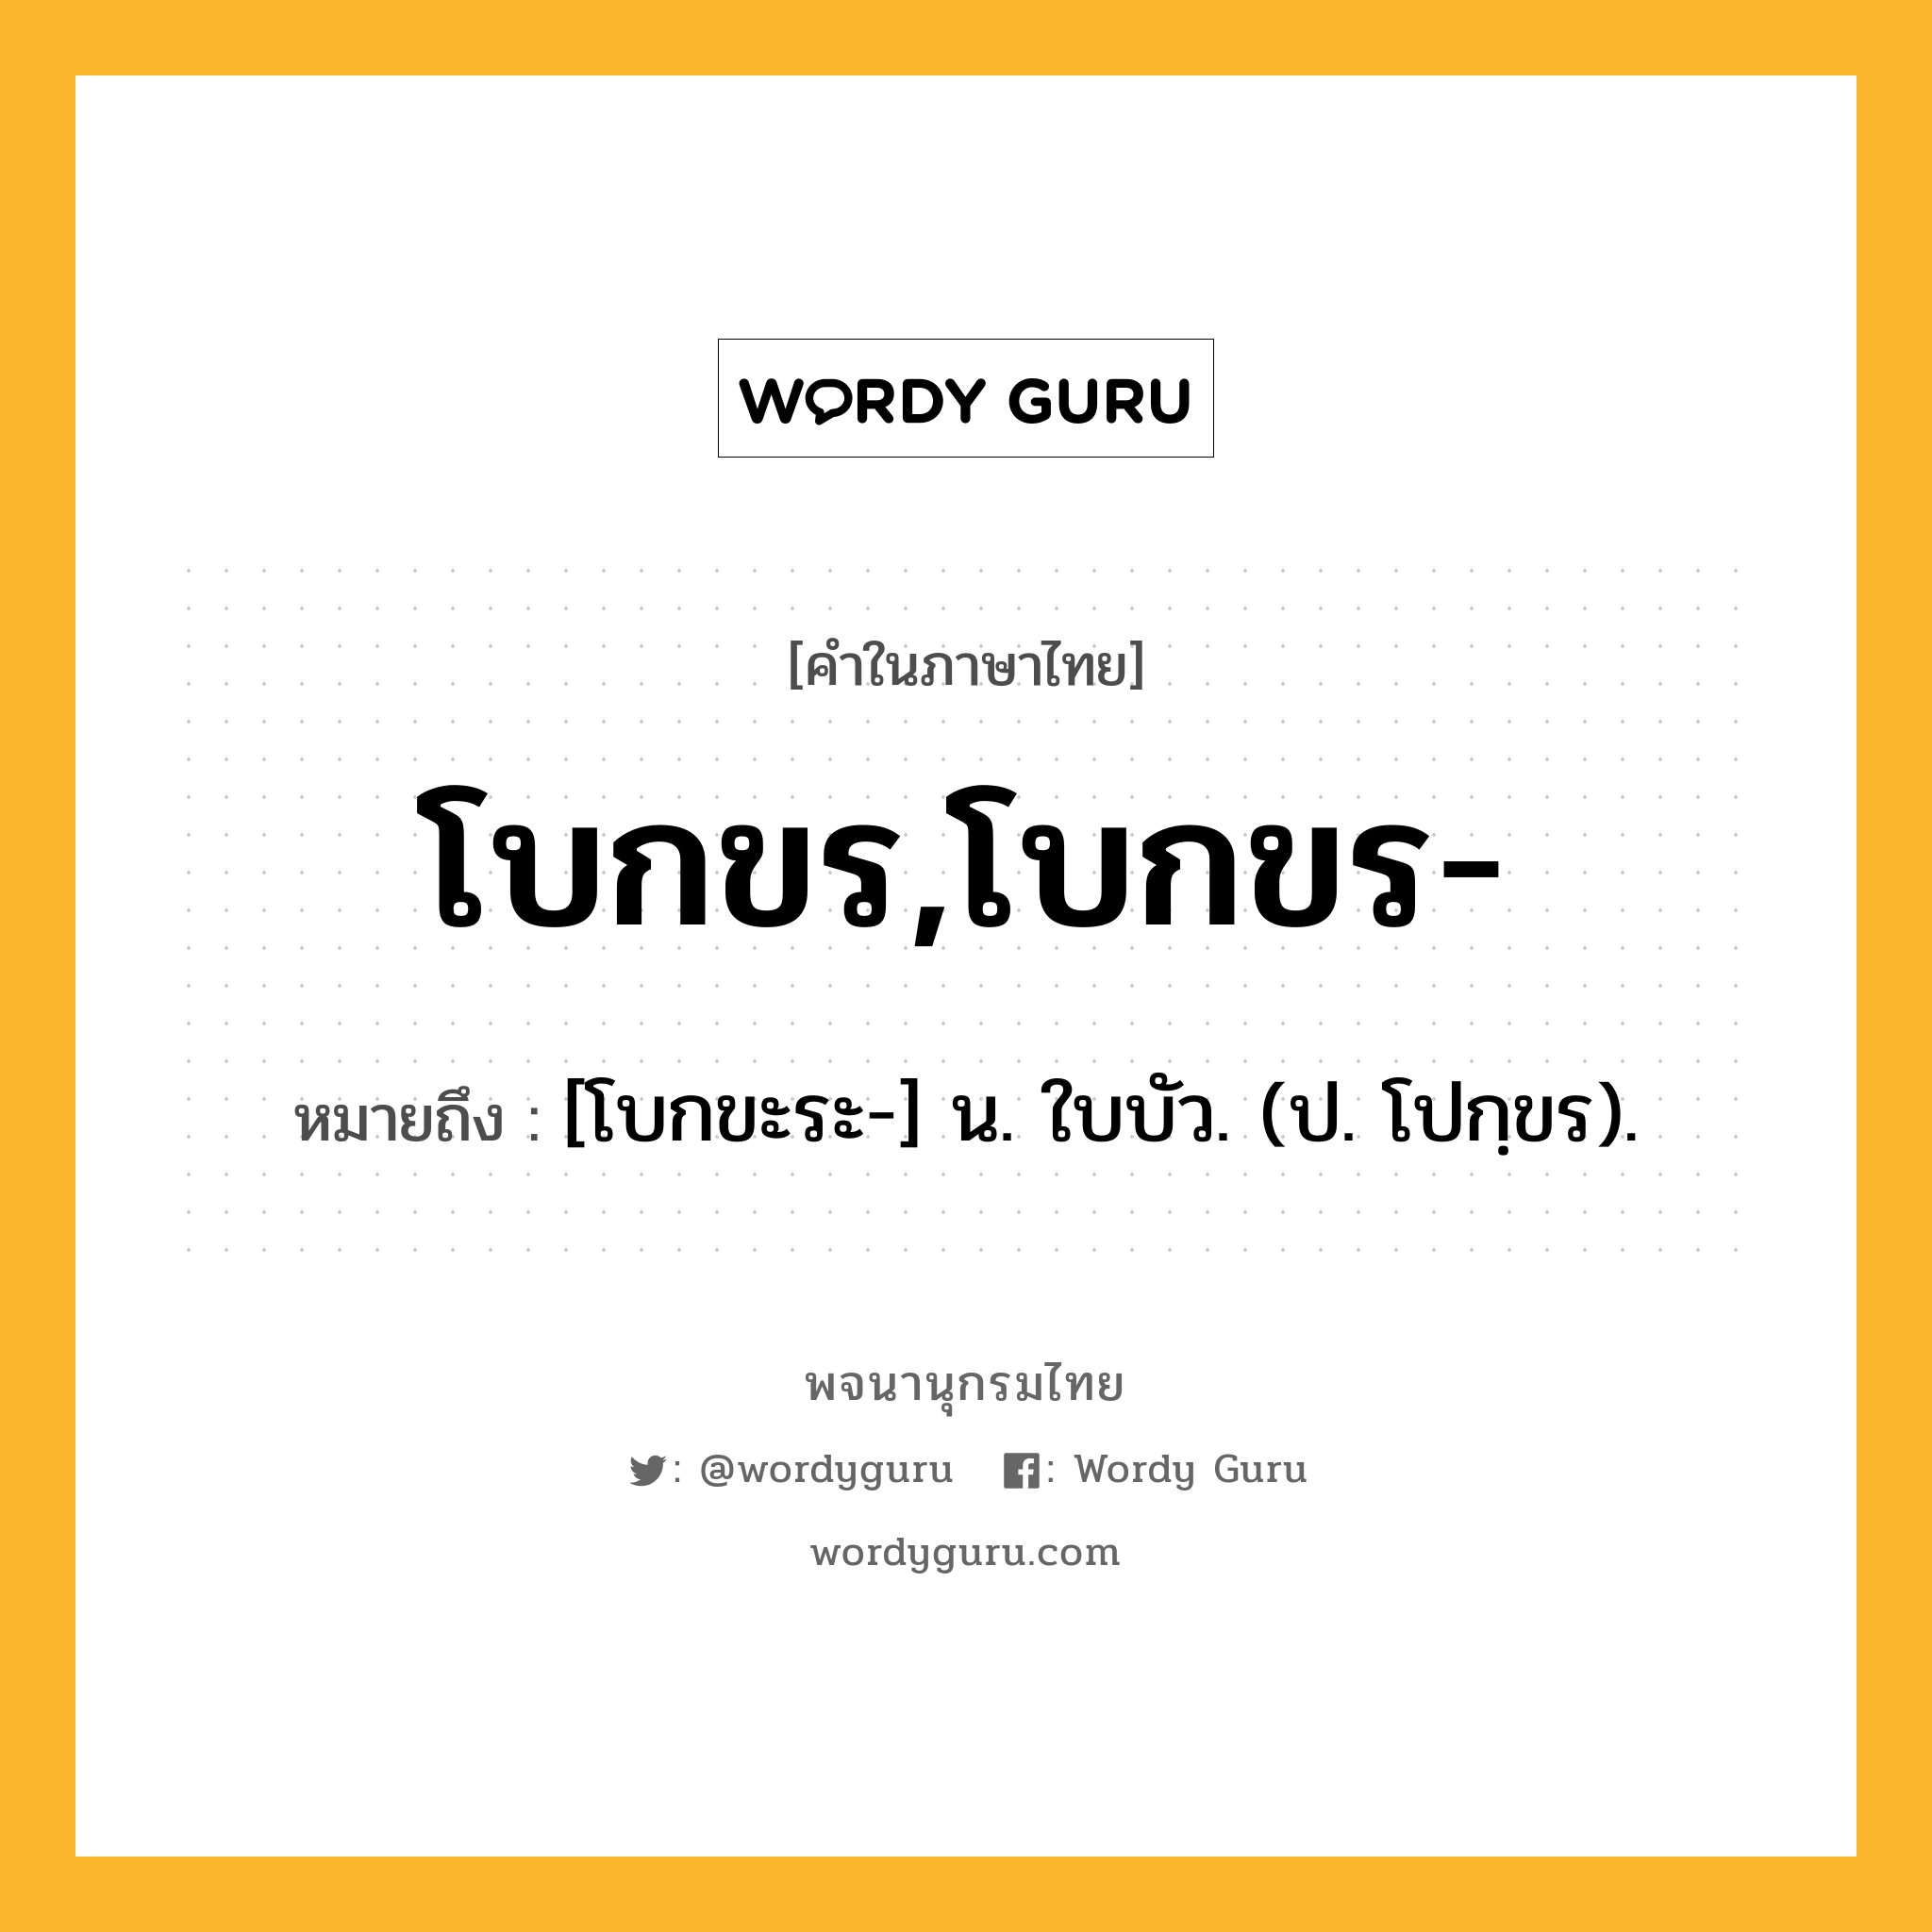 โบกขร,โบกขร- หมายถึงอะไร?, คำในภาษาไทย โบกขร,โบกขร- หมายถึง [โบกขะระ-] น. ใบบัว. (ป. โปกฺขร).